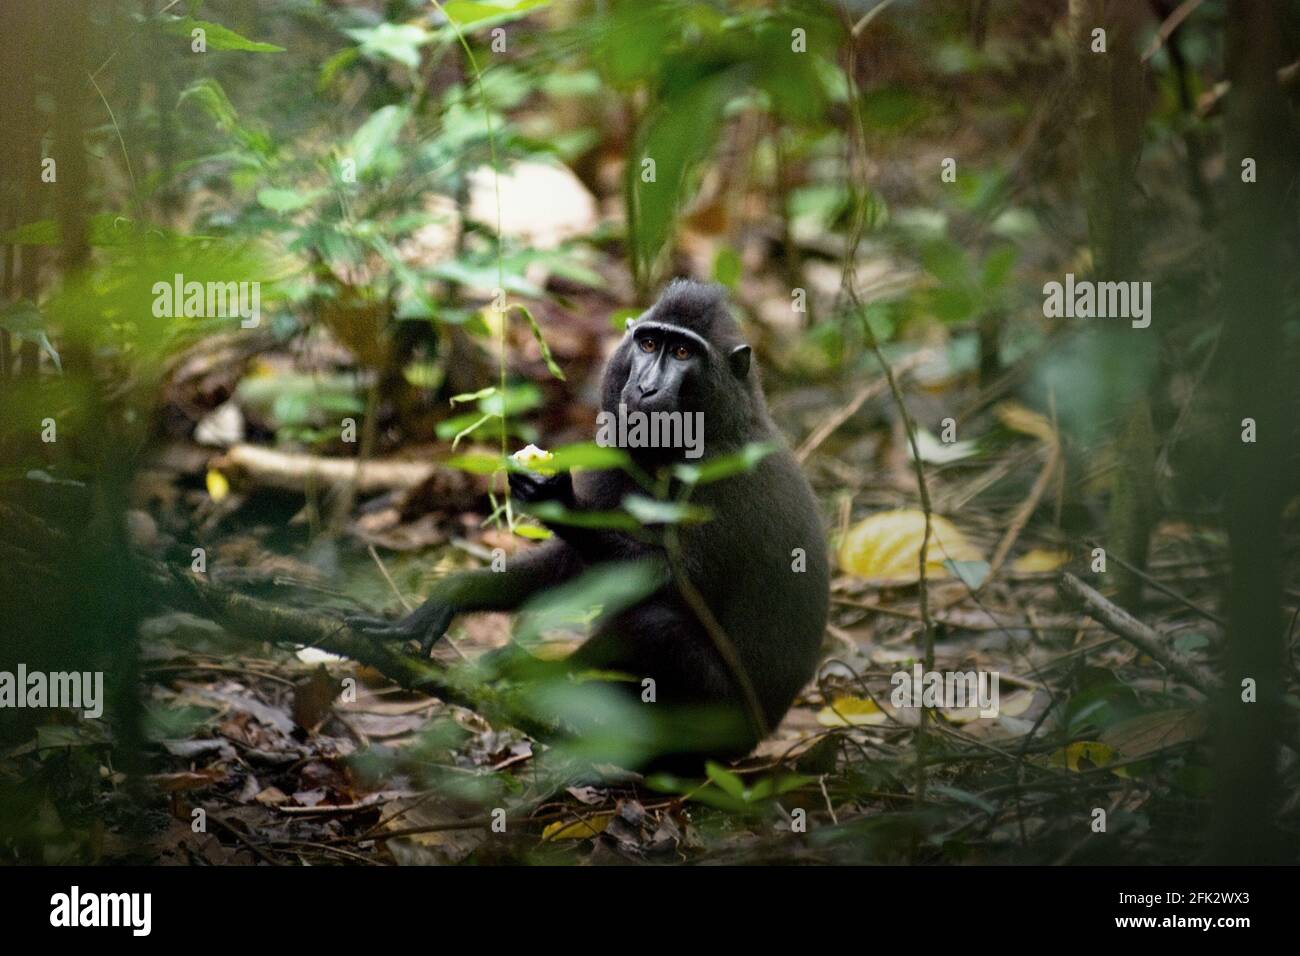 Celebes macaco crestato mangiare frutta, seduto sul pavimento della foresta. Piantare alberi da frutto nella zona tra foresta e paesaggio agricolo contribuirebbe a ridurre i conflitti uomo-scimmia, secondo Reyni Palohoen, coordinatore di progetto di Selamatkan Yaki (Save Yaki) all'inizio di questo mese, rispondendo all'invasione di scimmie di terreni agricoli nella reggenza del Minahasa meridionale, Sulawesi settentrionale, Indonesia. Foto Stock